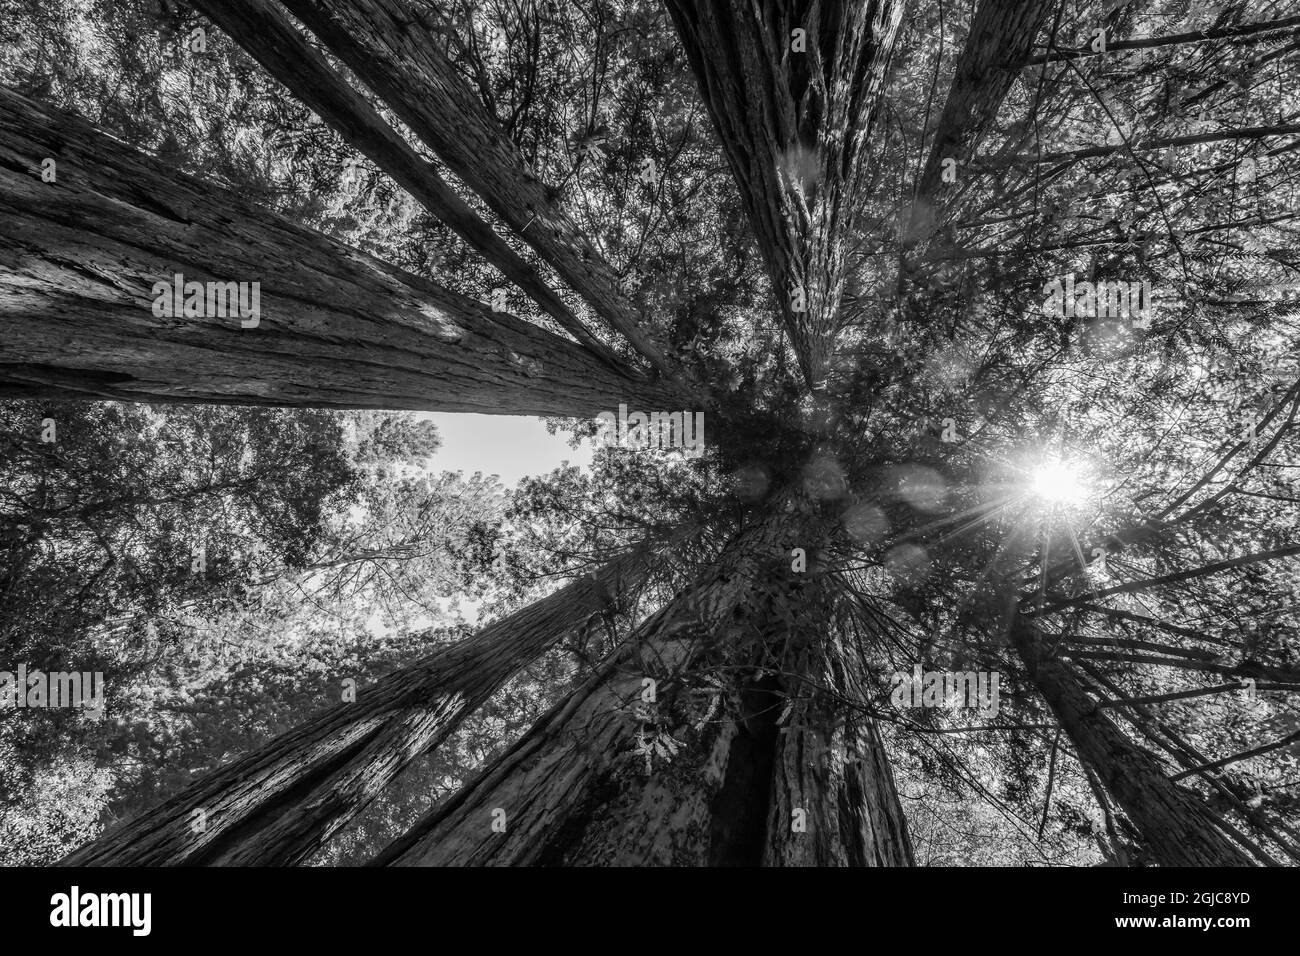 Die Sonne scheint durch den hoch aufragenden Baum, Redwoods National Park, Newton B Drury Drive, Crescent City, Kalifornien. Höchste Bäume der Welt, Tausende von y Stockfoto